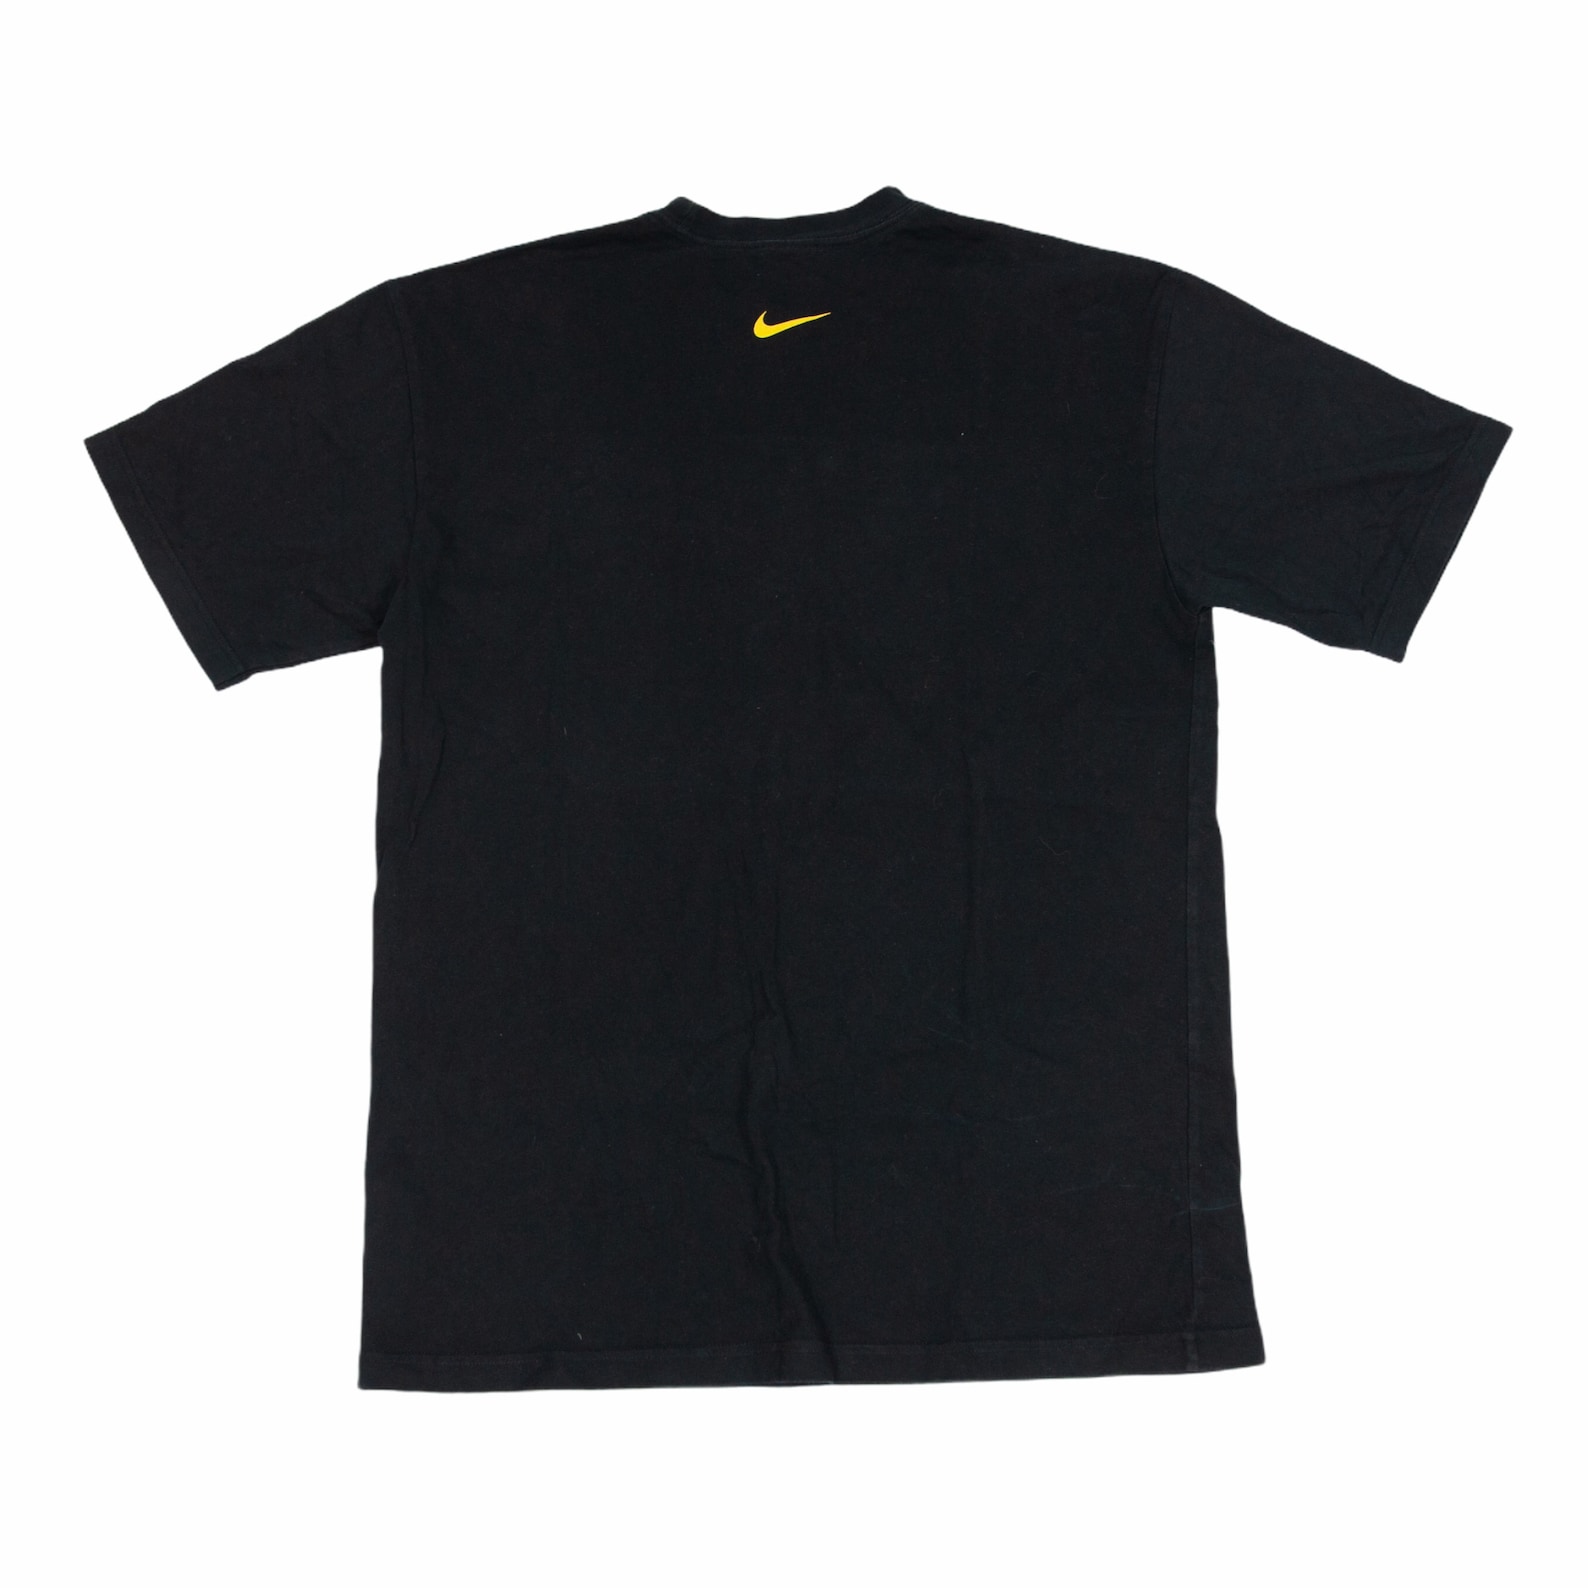 Vintage Nike Cortez Swoosh Oversized Tee Shirt Black XL | Etsy